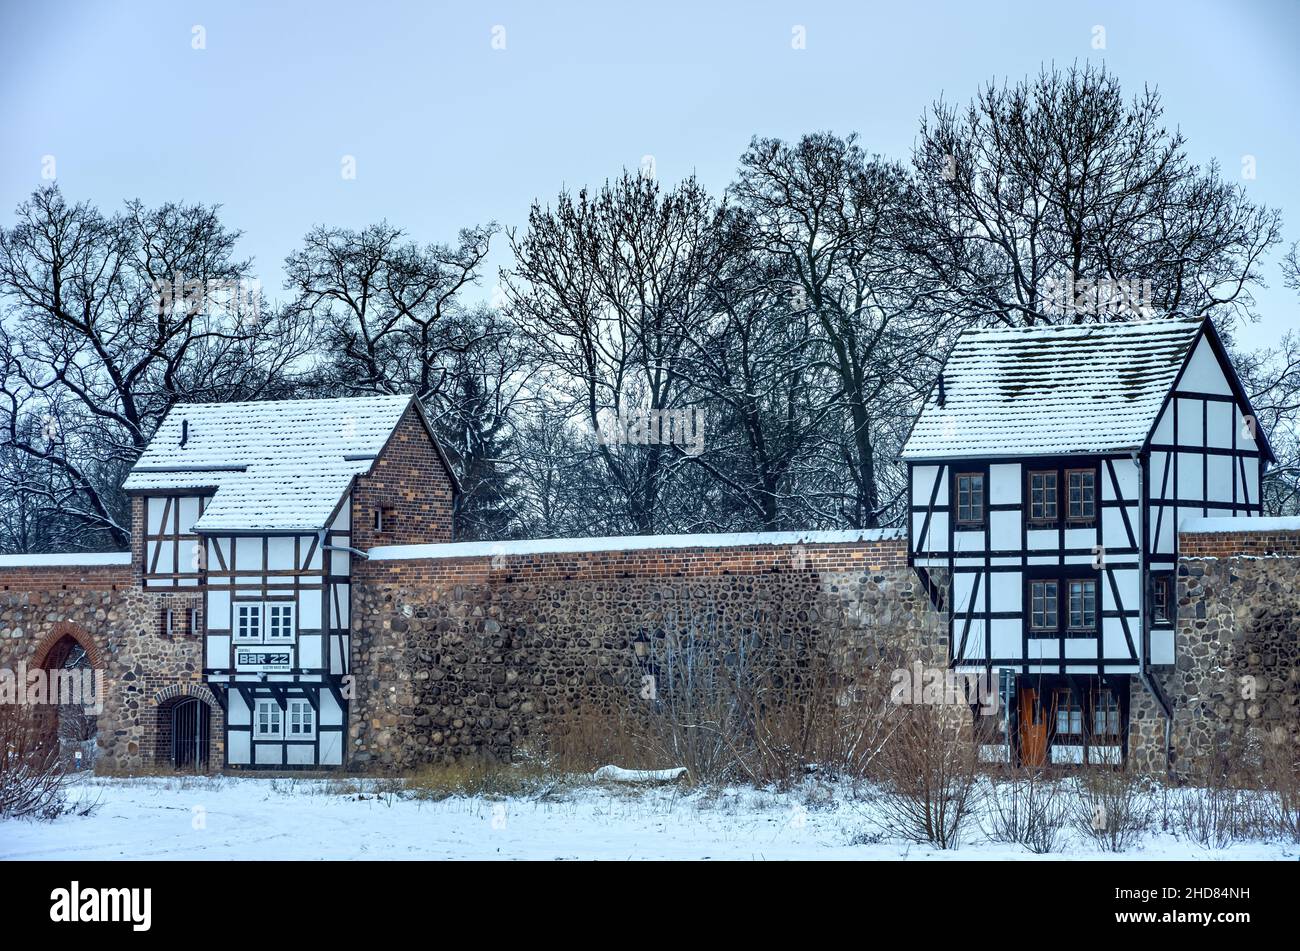 Mittelalterliche Stadtmauer mit Wieckhäusern (norddeutsche Variante eines Wachhauses) im Winter, Neubrandenburg, Mecklenburg-Vorpommern, Deutschland. Stockfoto